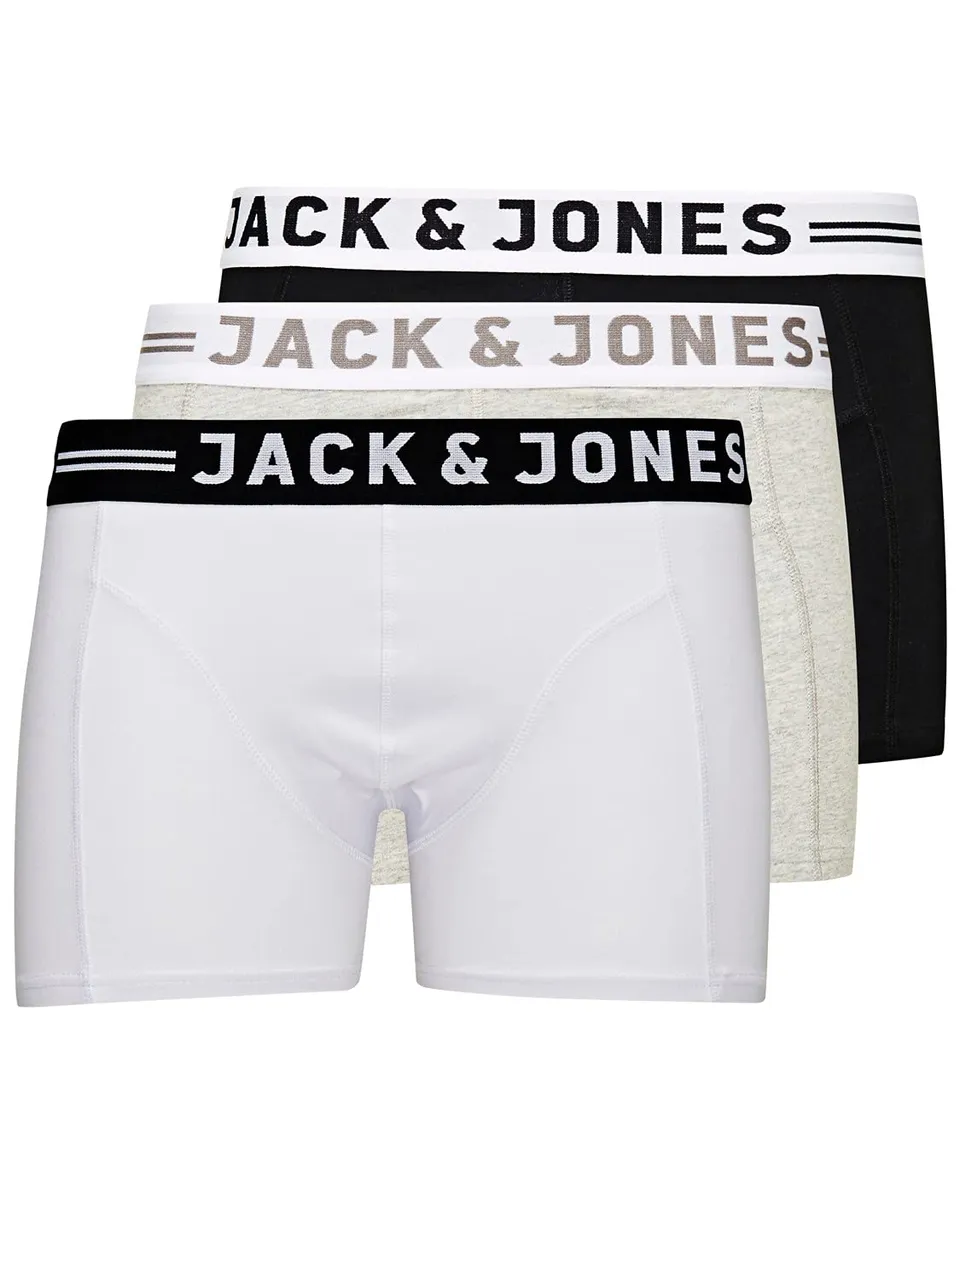 JACK & JONES Sense Boxers - Light Grey/Black/White - X Large